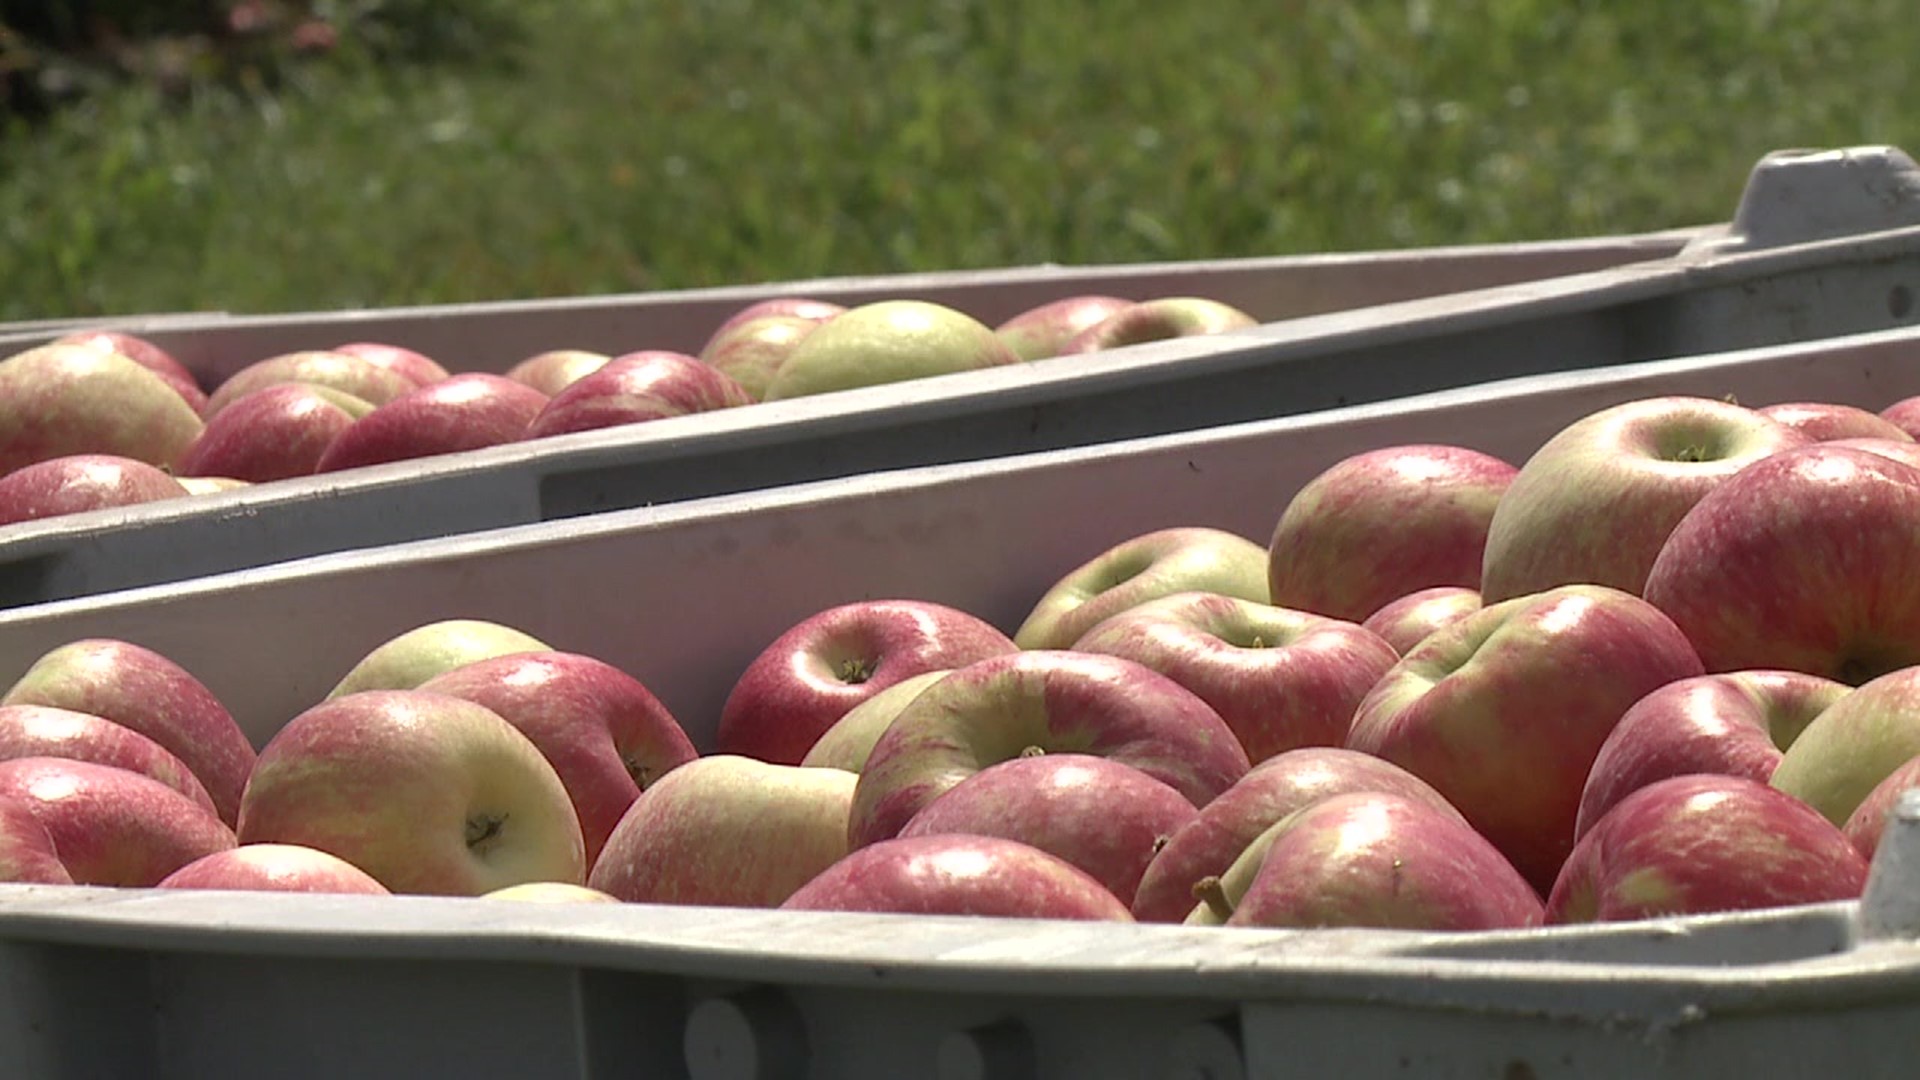 Apple crop looks promising as season begins